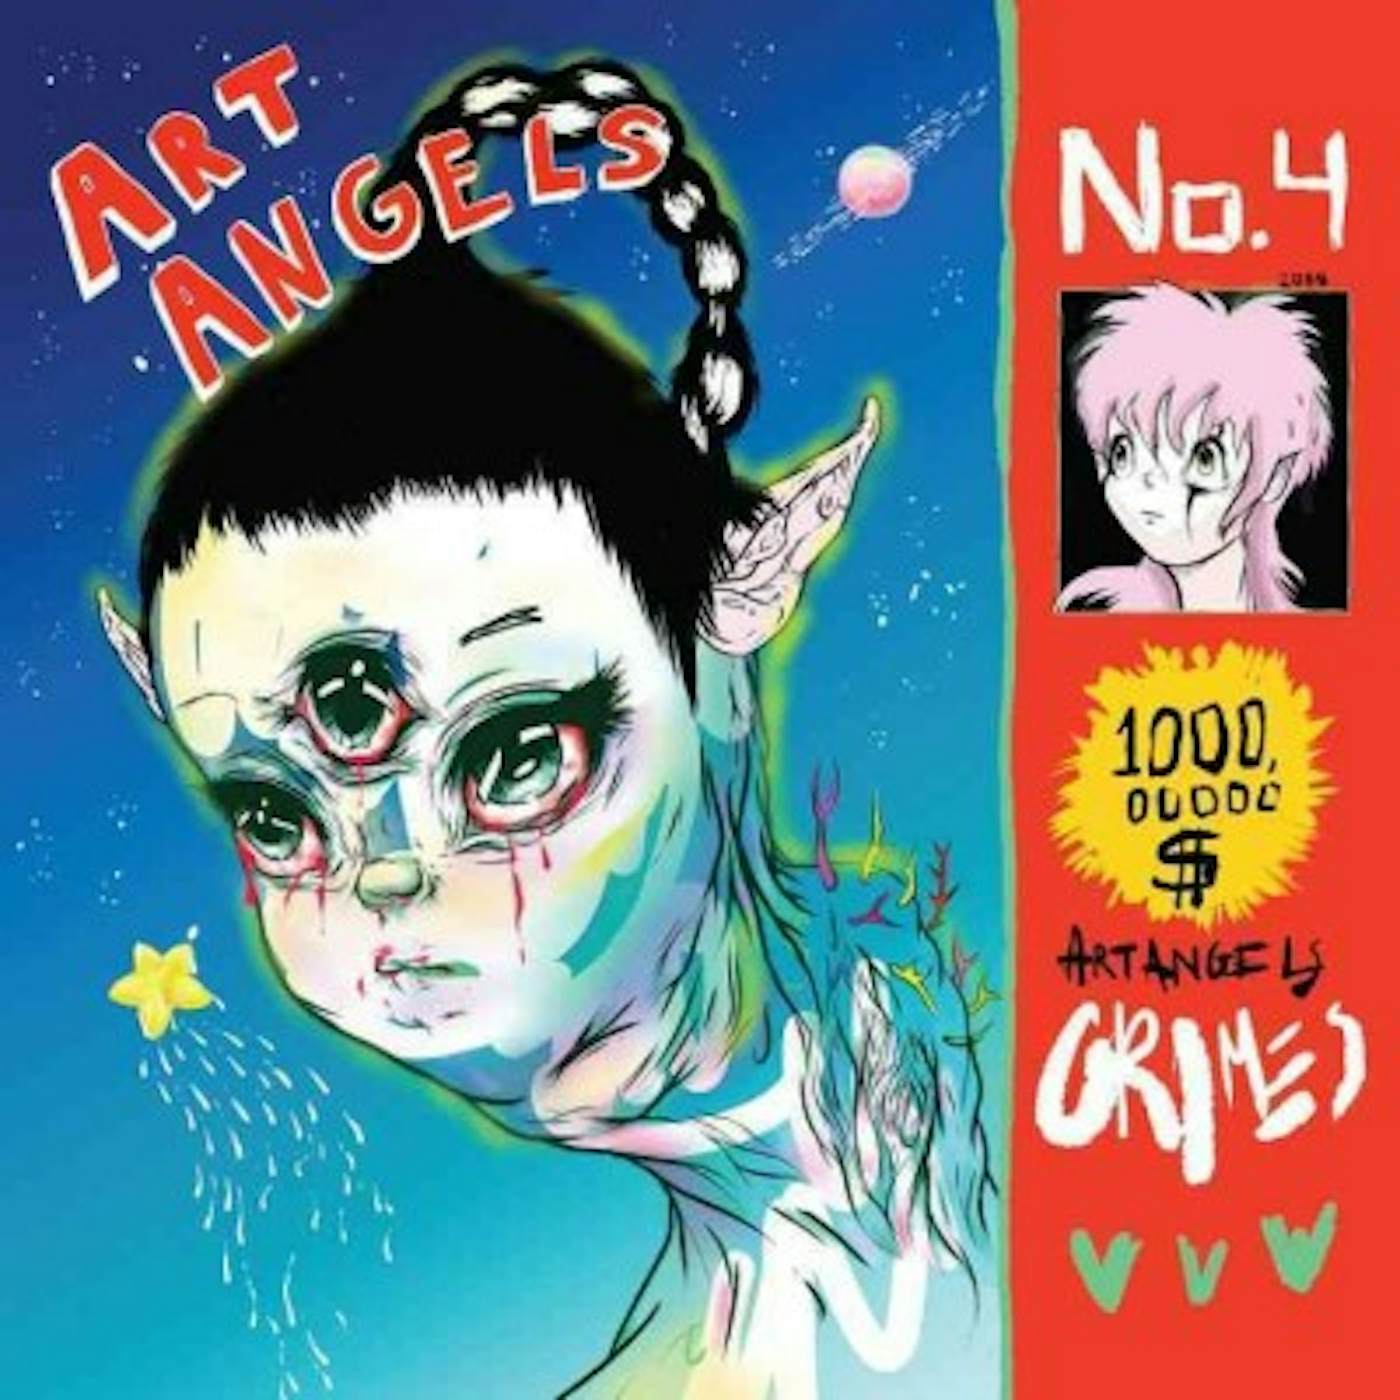 Grimes ART ANGELS CD